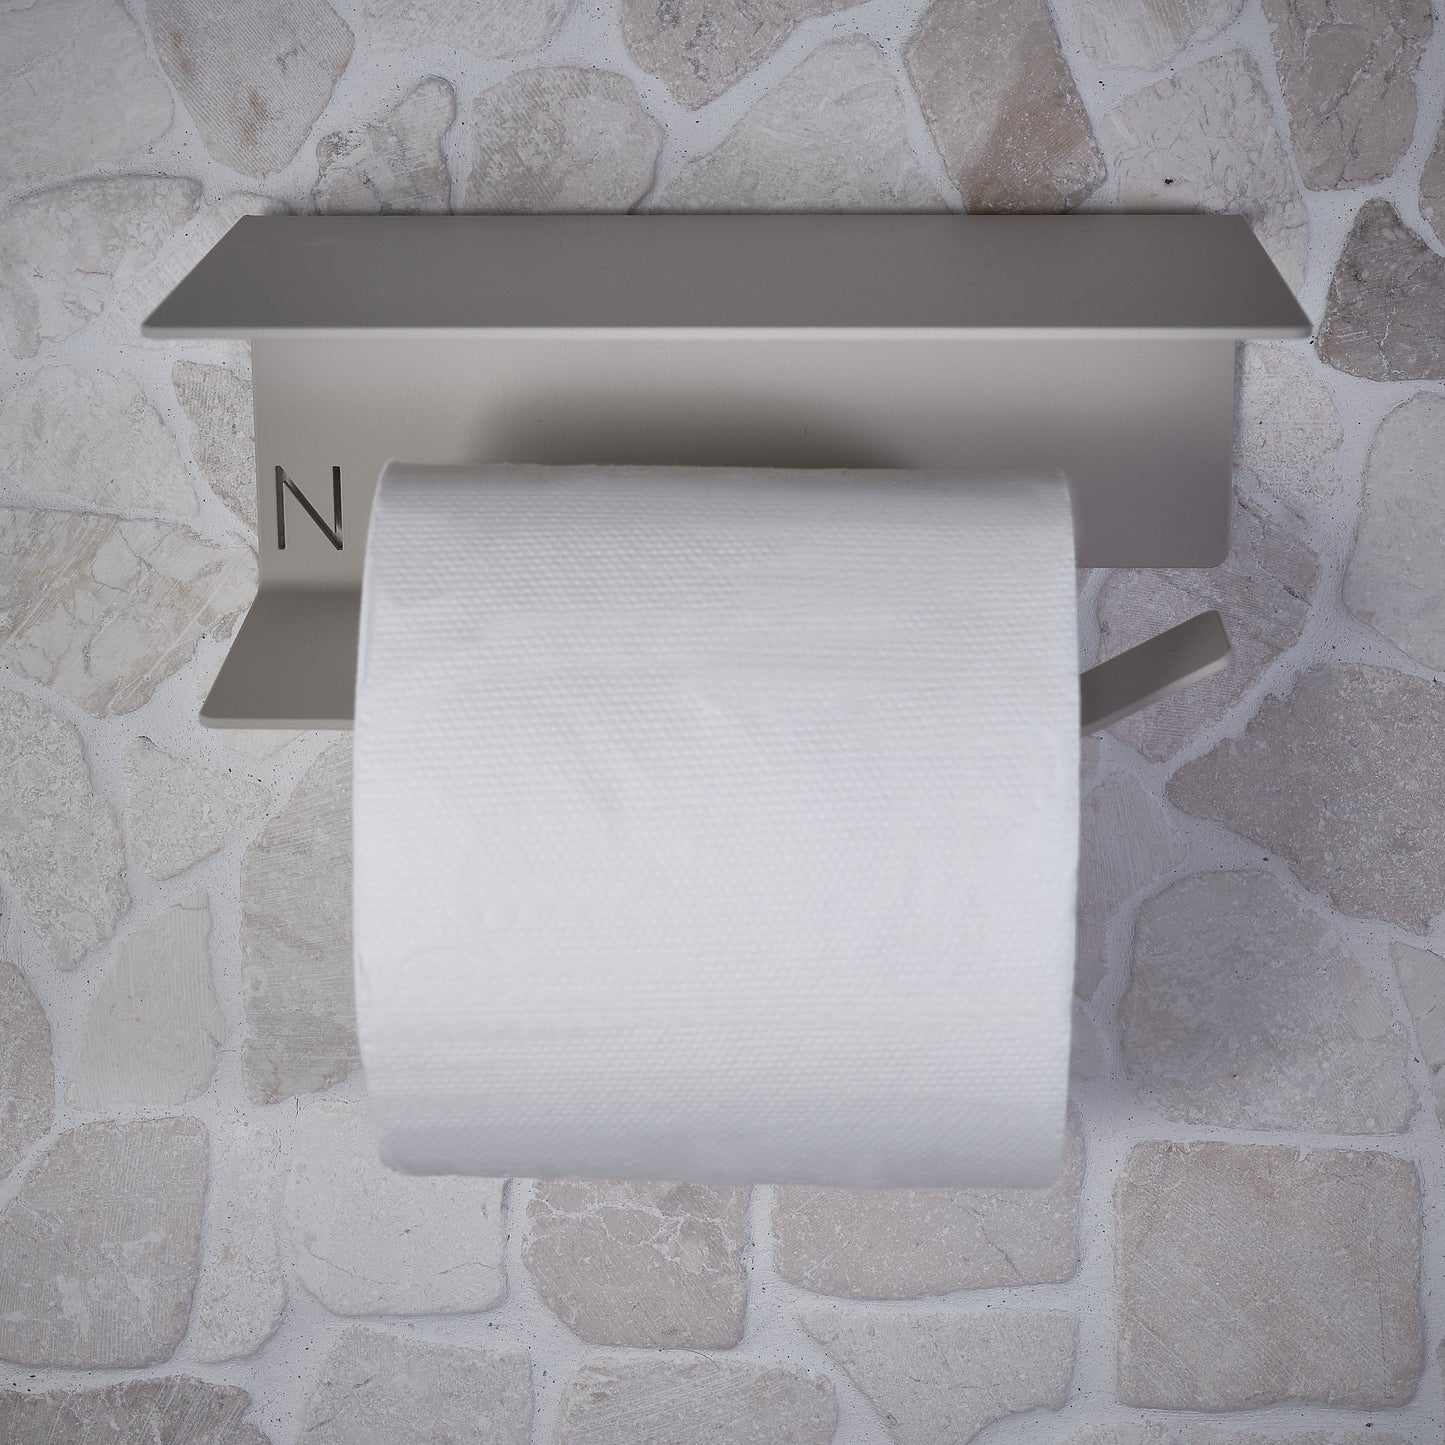 OUTLET LINE toilet paper holder